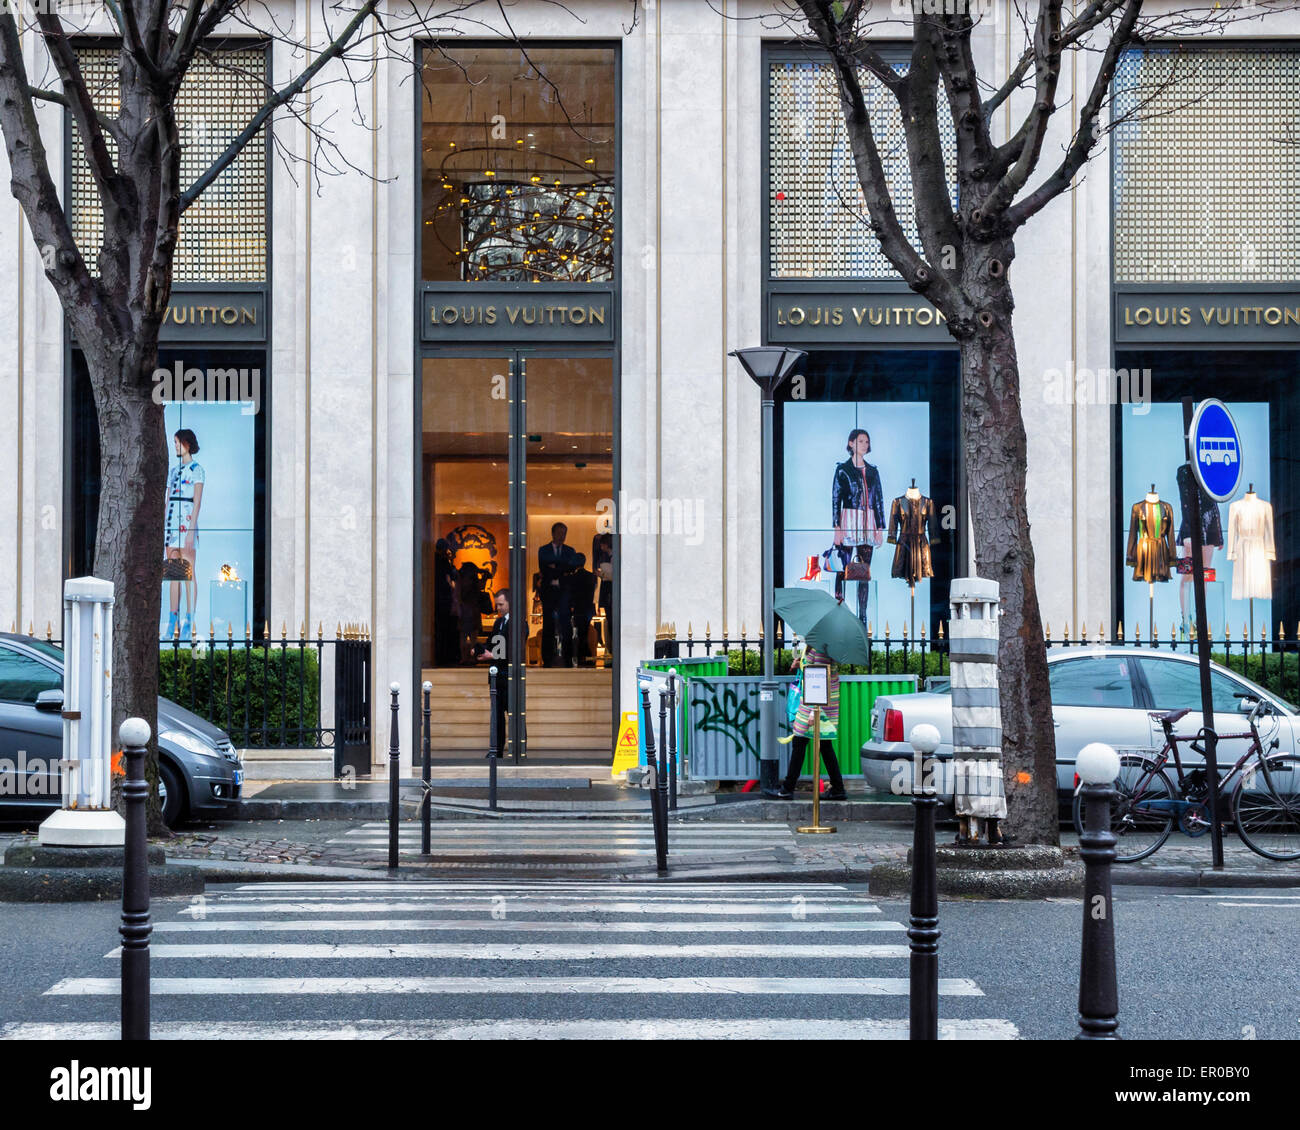 Louis Vuitton Paris France Locations | Jaguar Clubs of North America